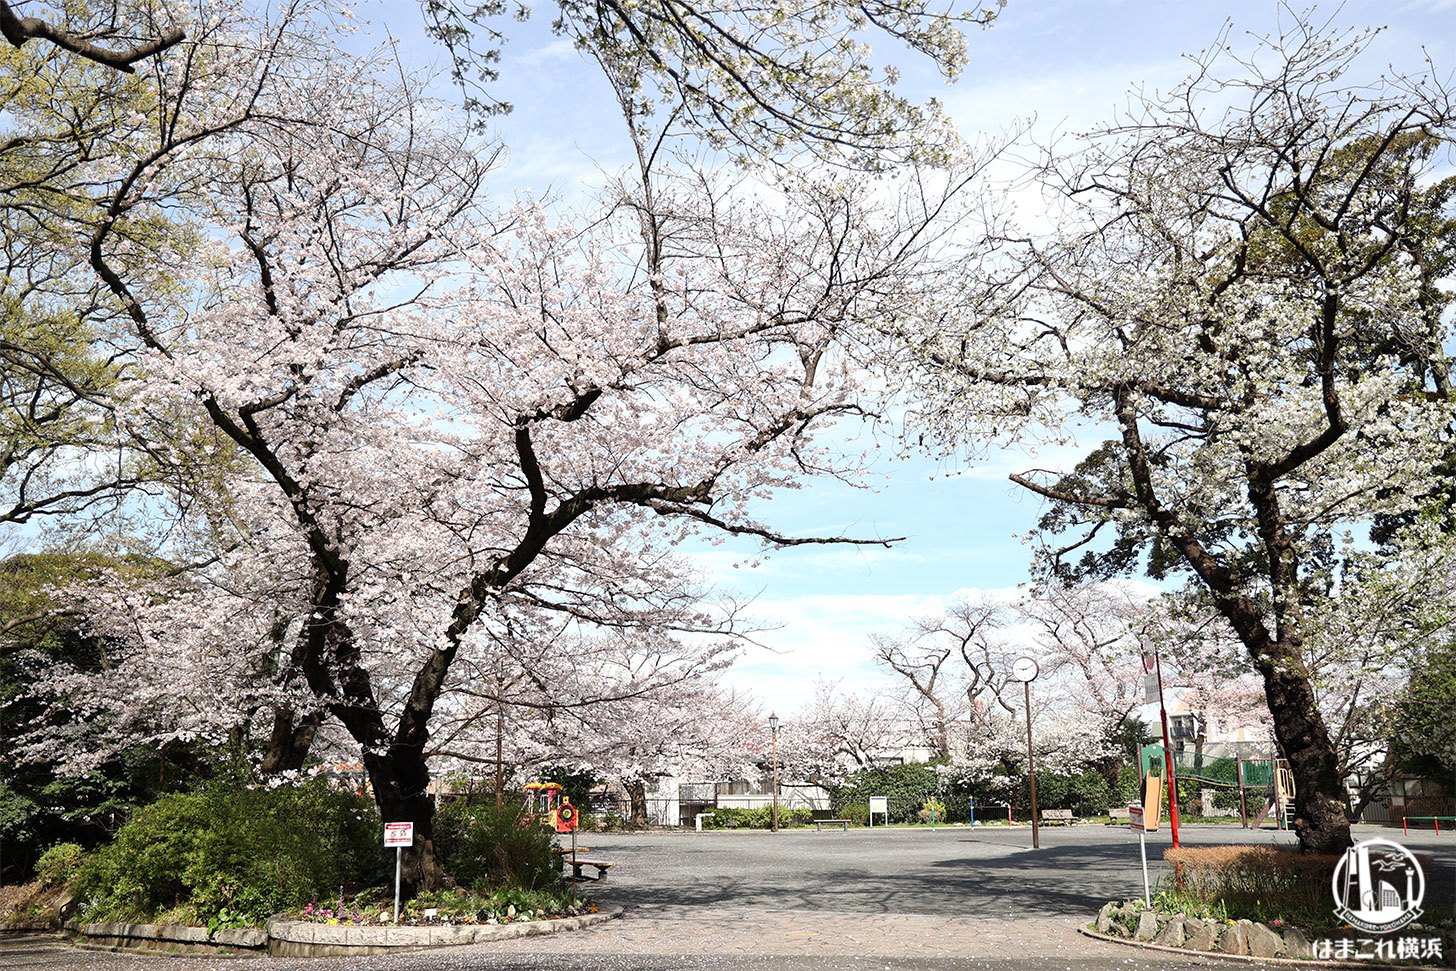 横浜のんびり桜めぐり 御所山公園〜掃部山公園〜みなとみらいまで桜を大満喫